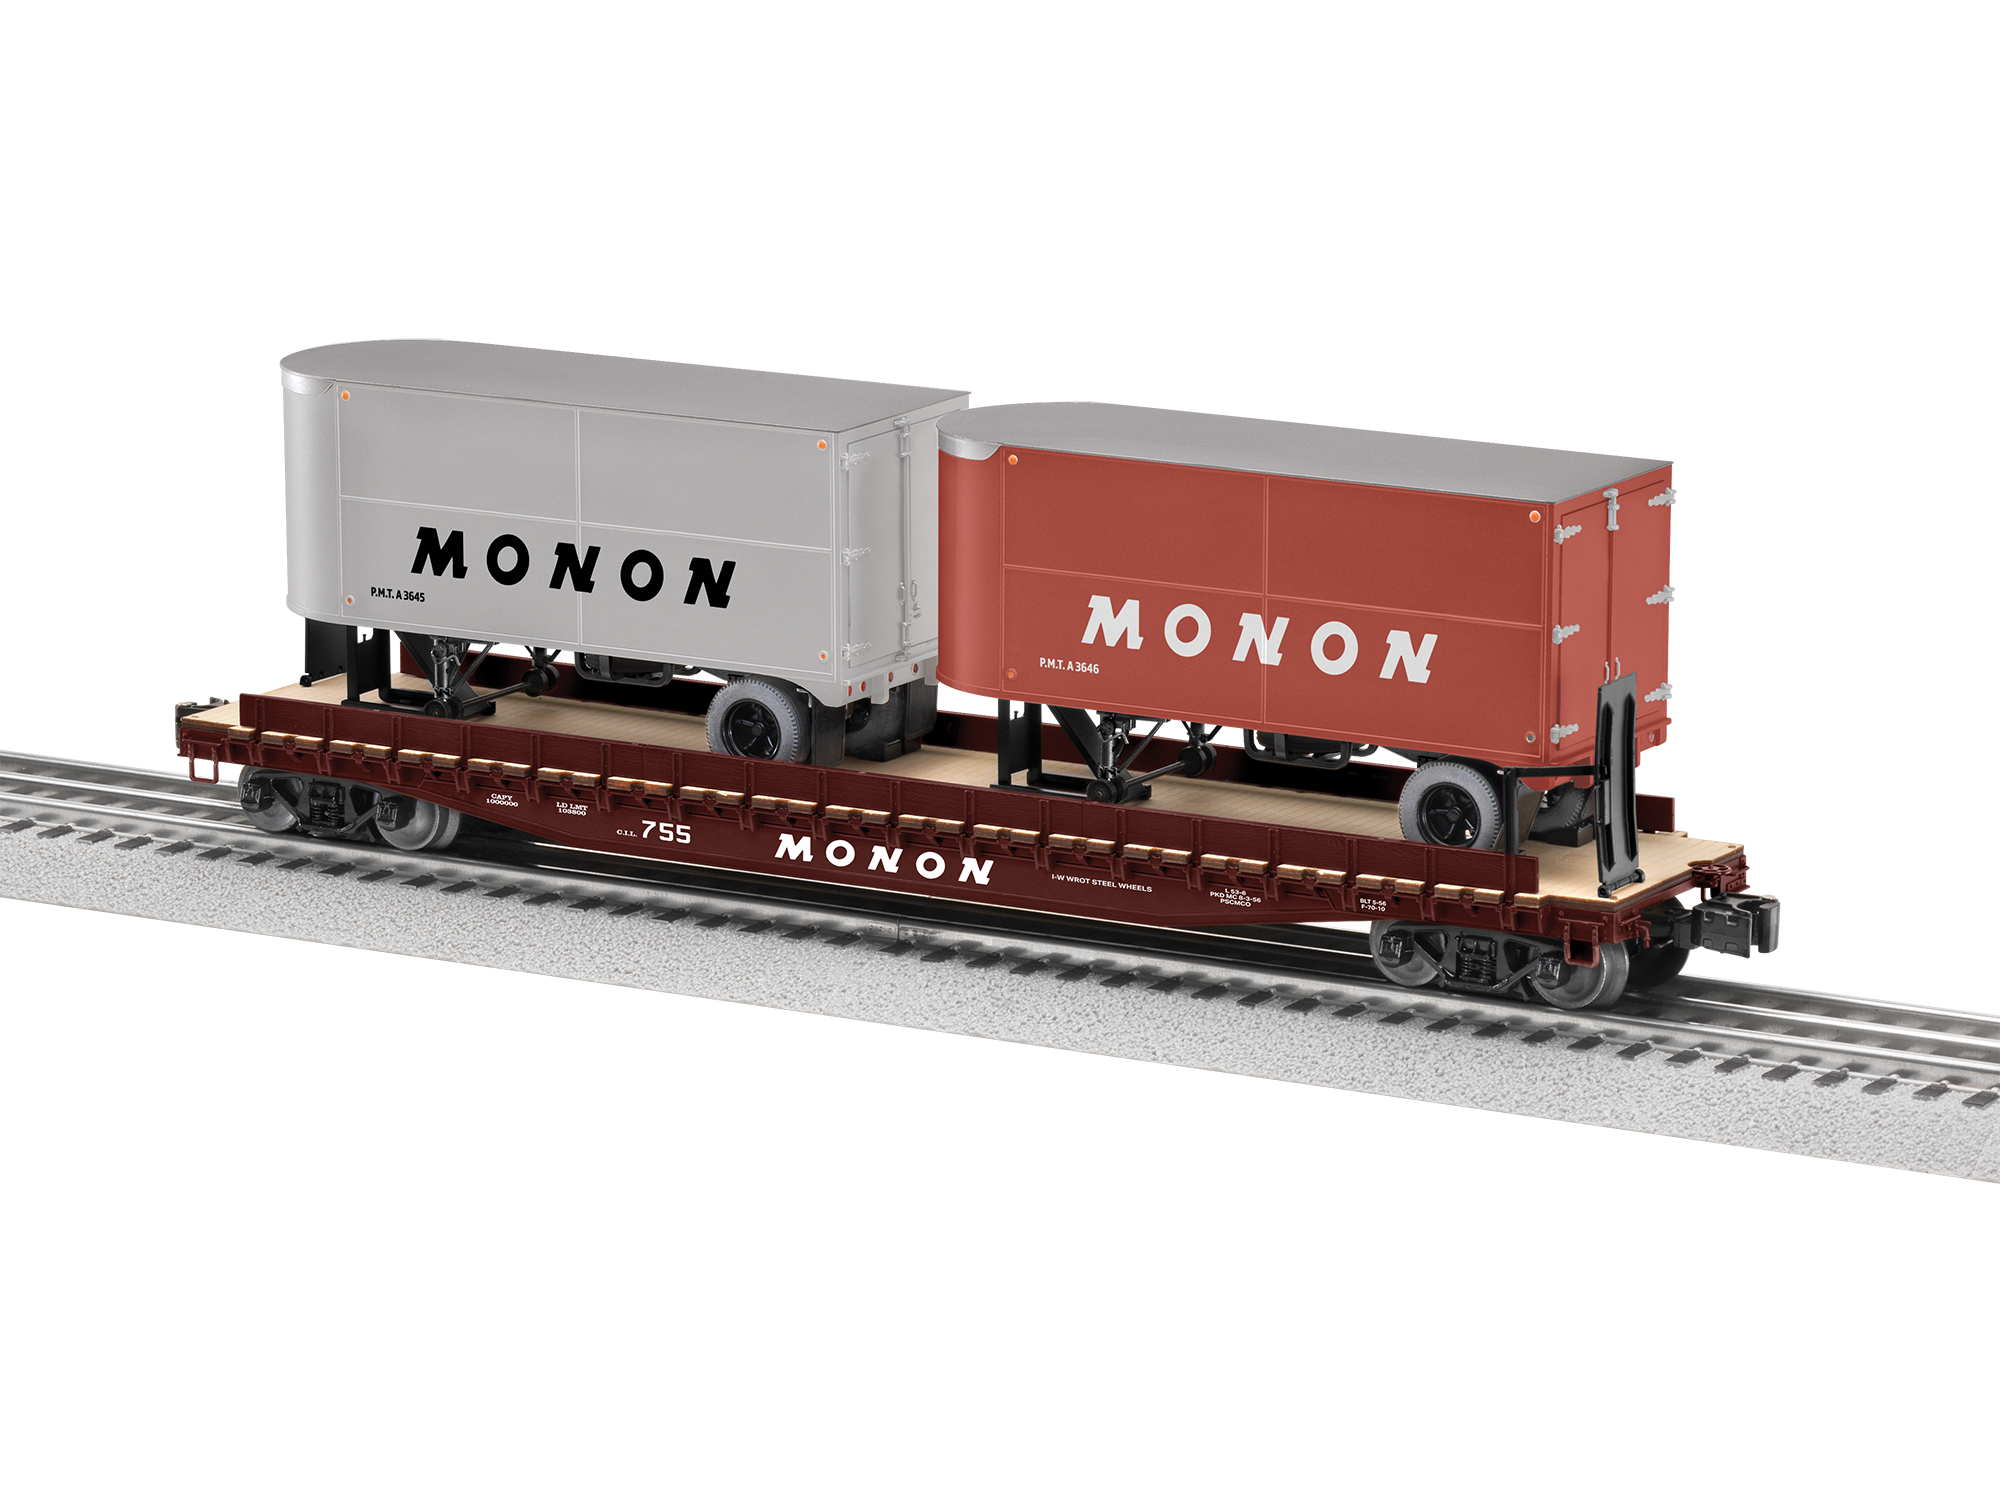 Lionel 2426850 - 50' Flatcar "Monon" w/ 20' Trailers # - Custom Run for MrMuffin'sTrains